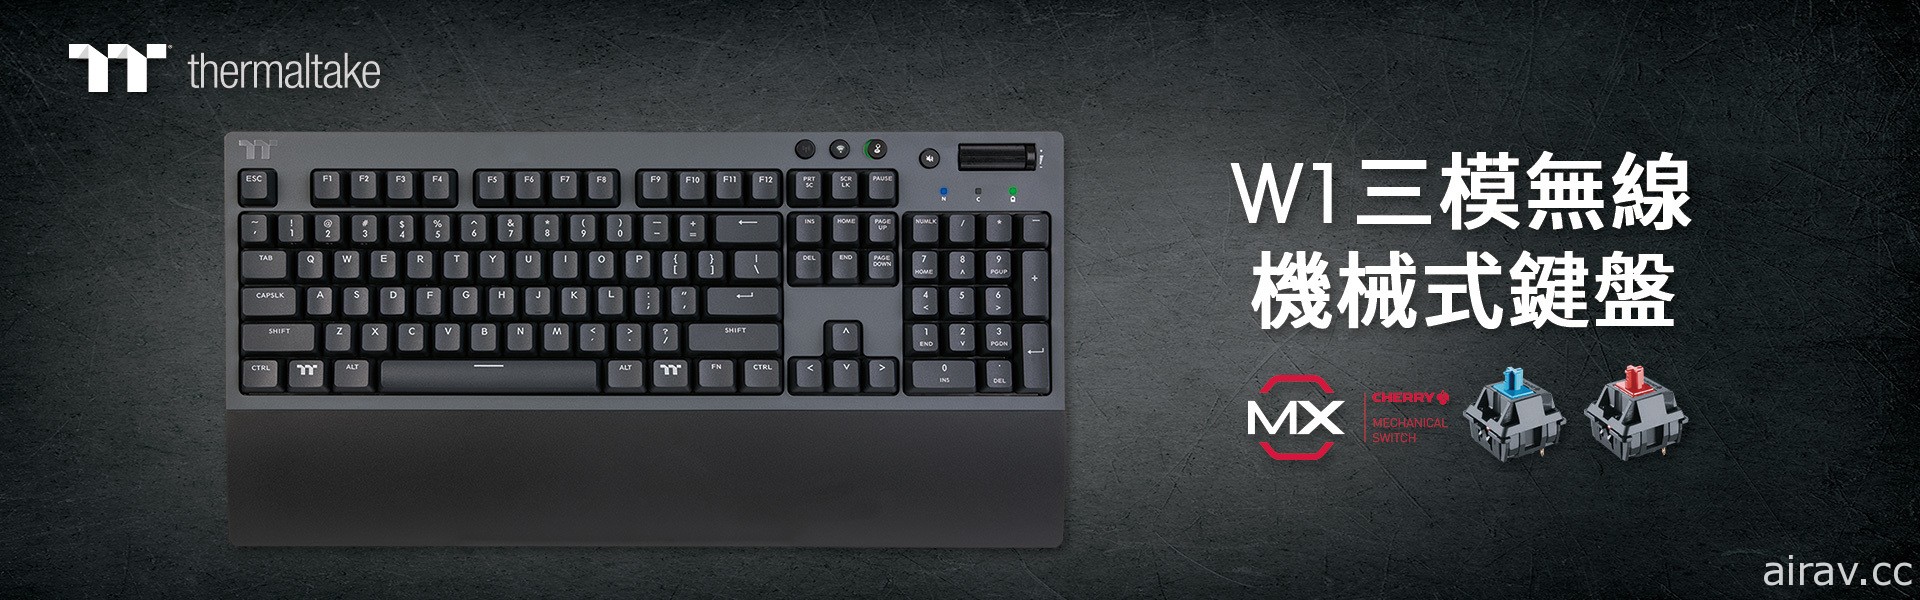 曜越發表全新 W1 三模無線機械式電競鍵盤 採用 CHERRY MX 機械軸